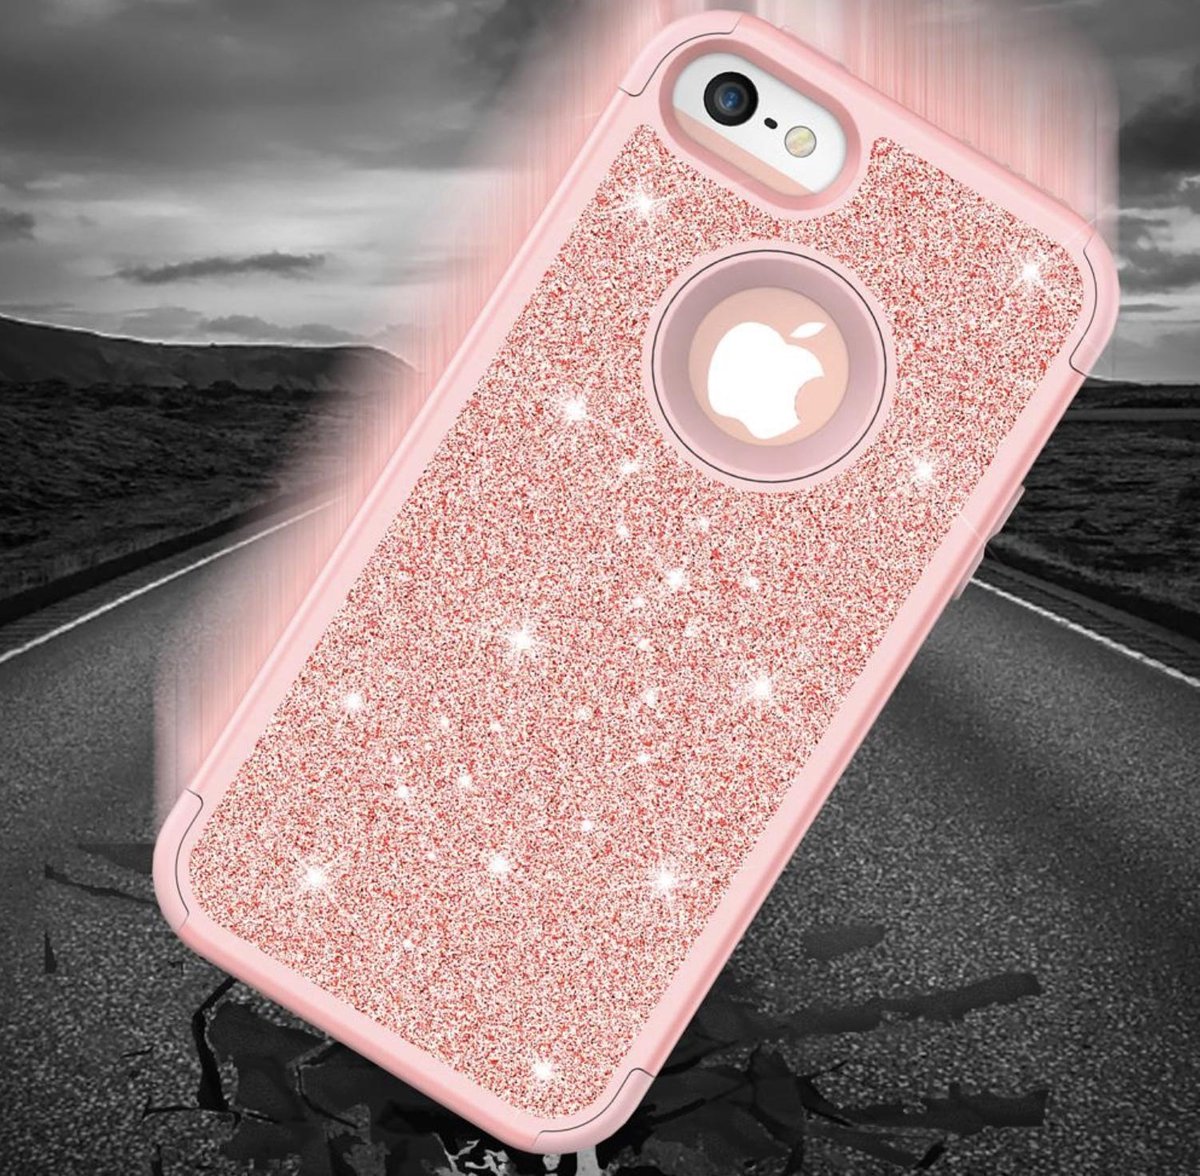 leven Opknappen naar voren gebracht Luxe Glitter Case voor Apple iPhone 5(s) - iPhone 5 SE - Roze - Glitters -  360º Armor... | bol.com